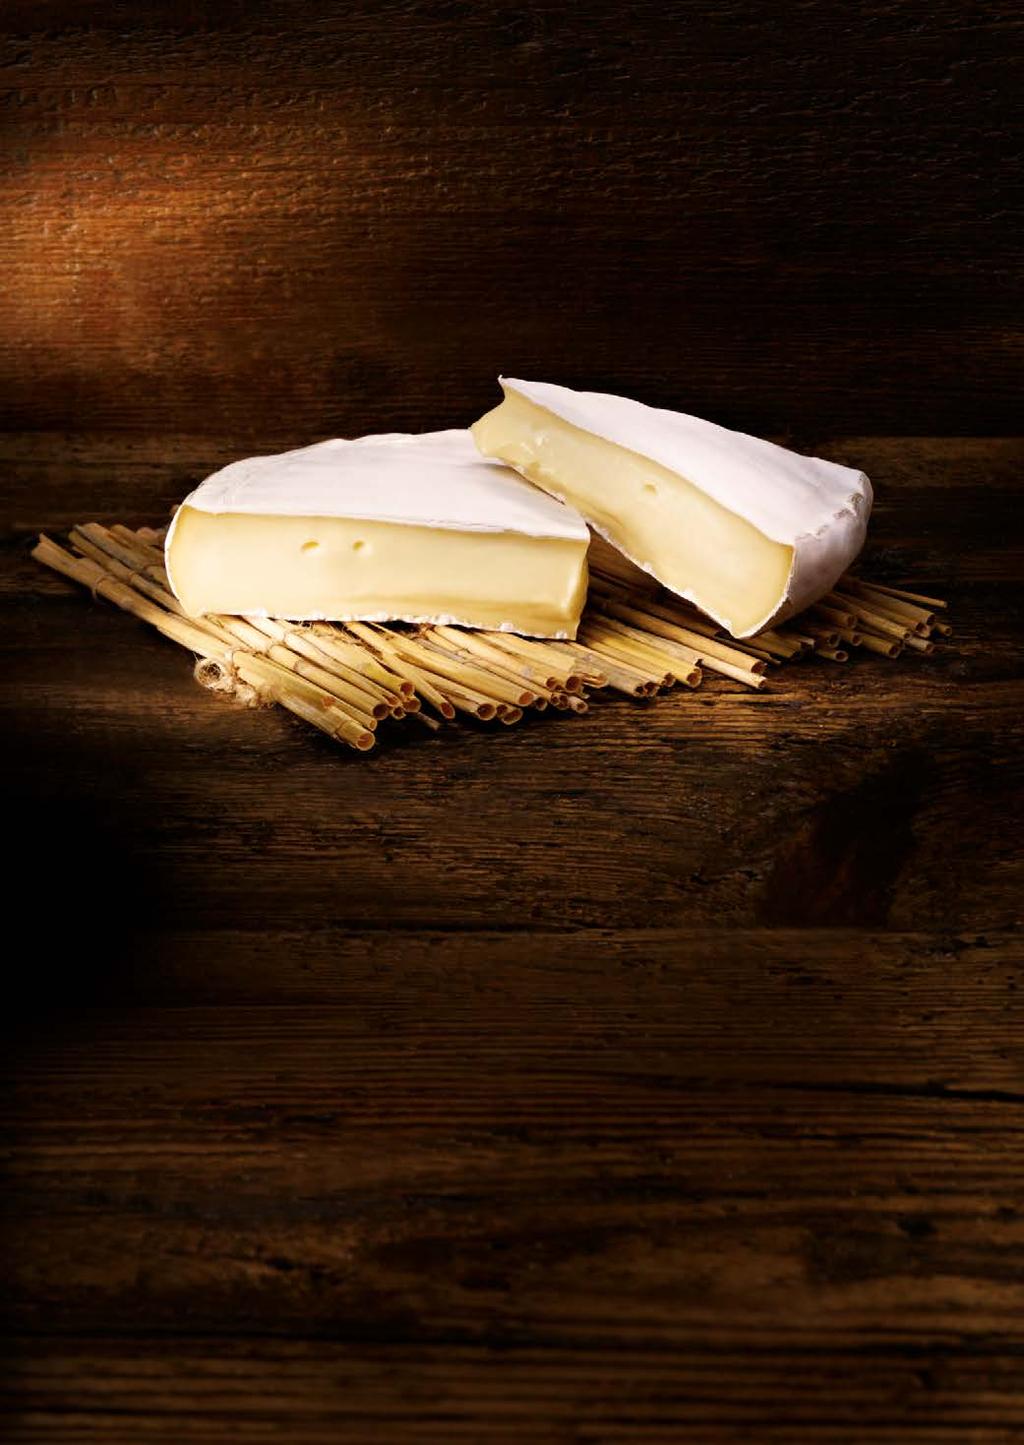 90 Herkunft: Schweiz Region: Wallis Rebsorte: Chardonnay Genussreife: 4 6 Jahre ab Ernte * Dieser Käse ist seit dem